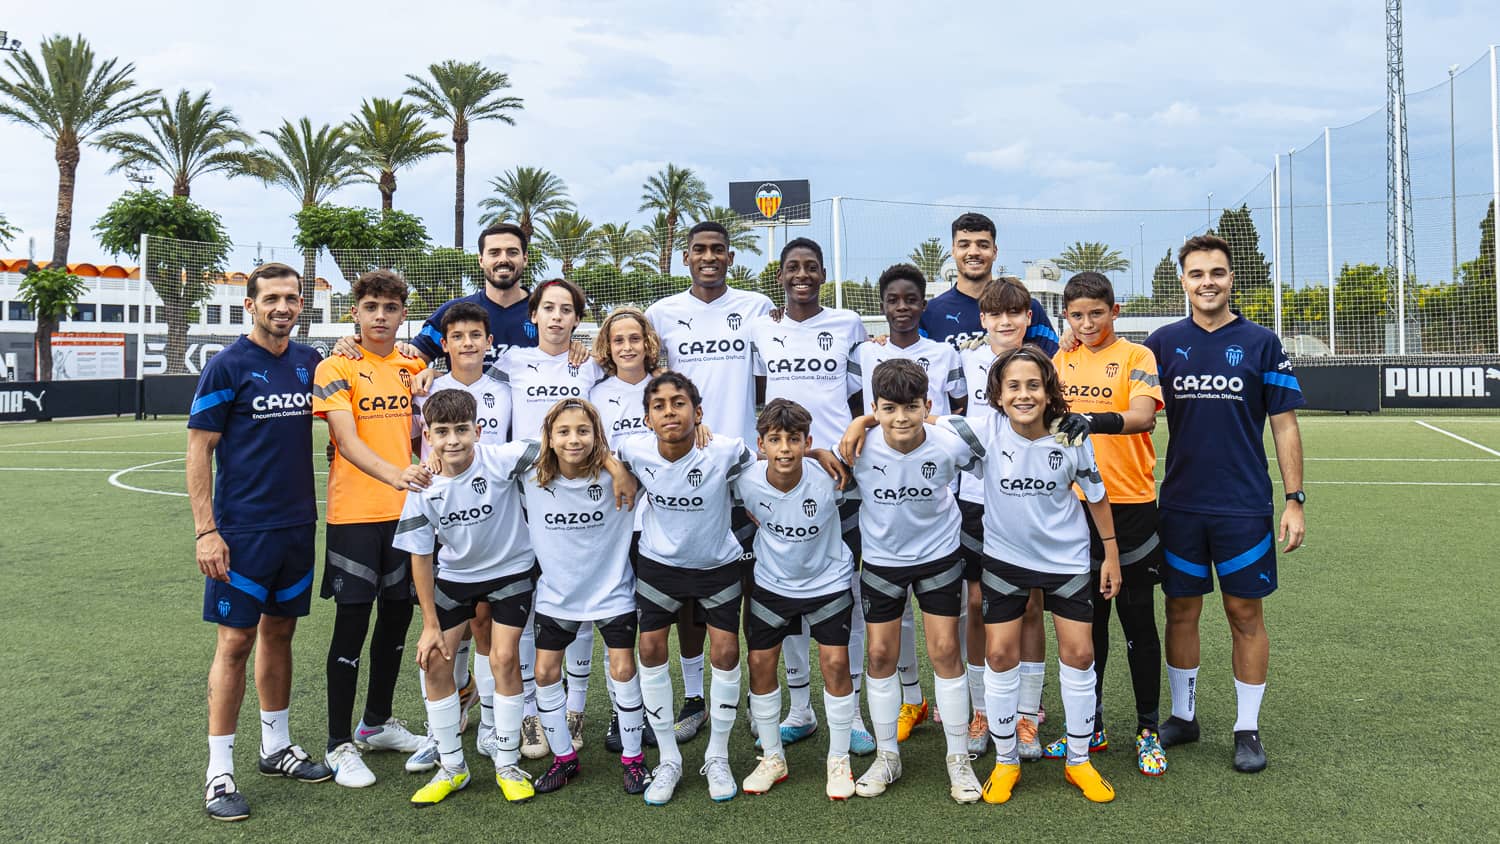 Estos son los 12 jugadores del Valencia CF en LaLiga Promises Internacional  - Valencia Base